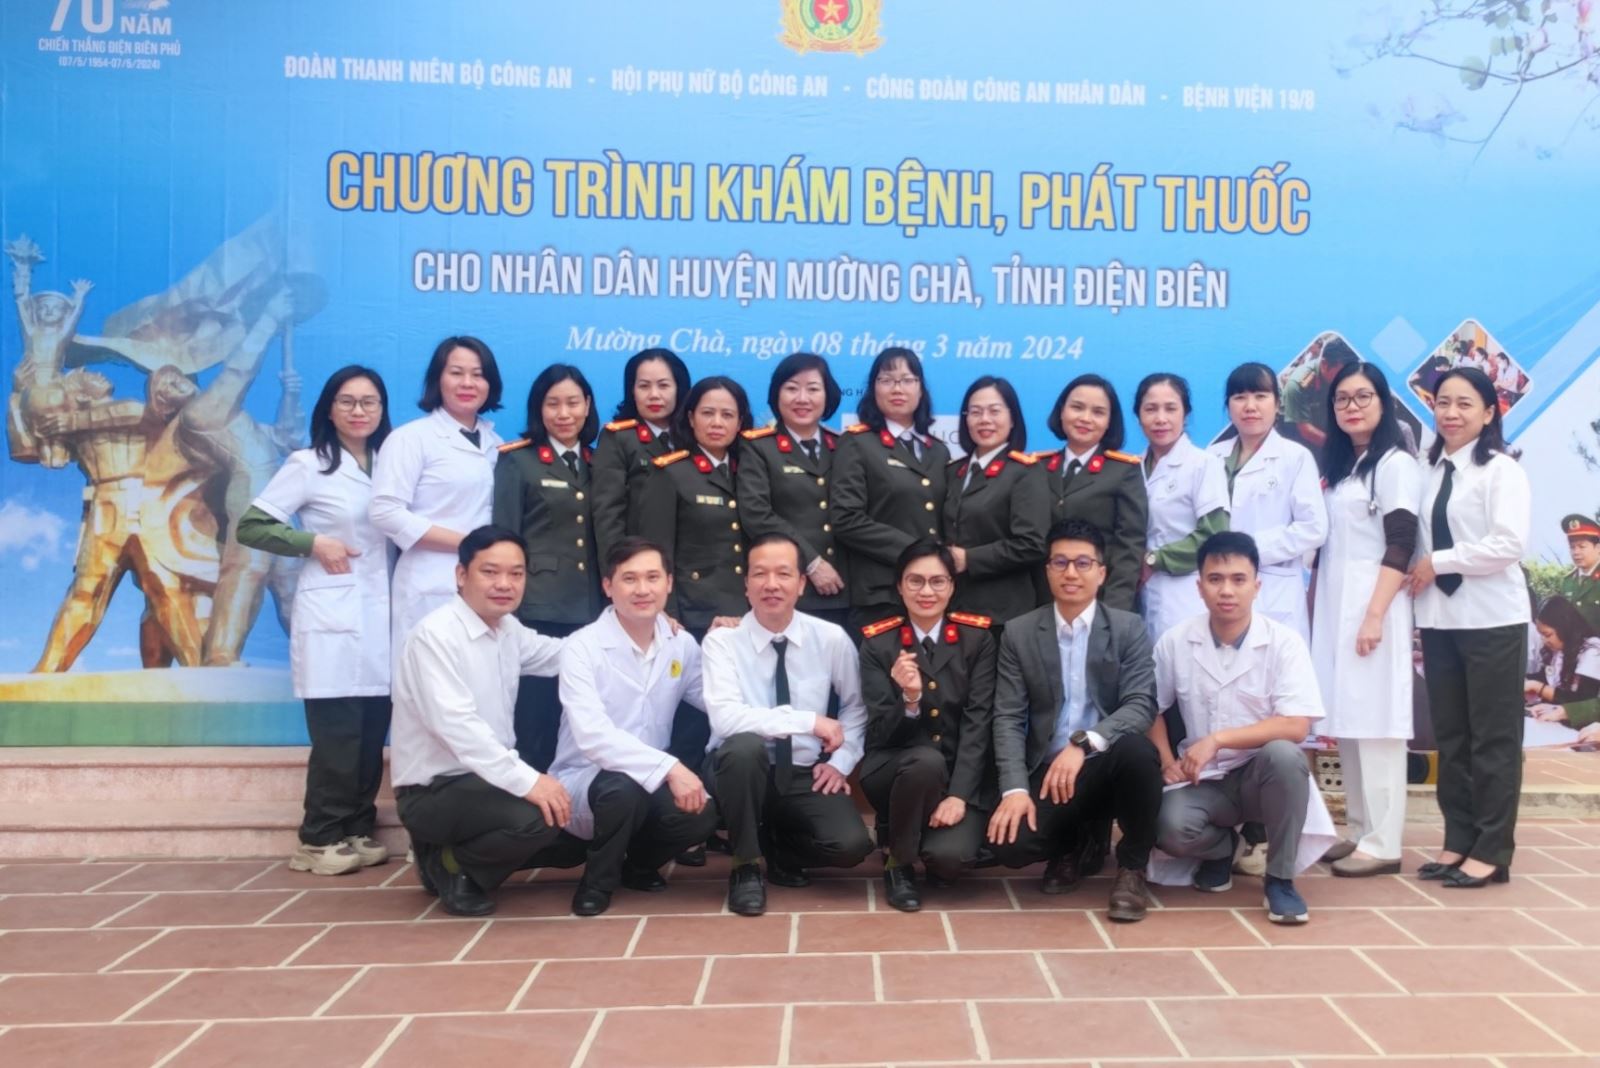 Ban Thanh niên, Ban Phụ nữ, Ban Công đoàn CAND phối hợp Bệnh viện 19-8 tổ chức chương trình khám bệnh, phát thuốc tại huyện Mường Chà, tỉnh Điện Biên